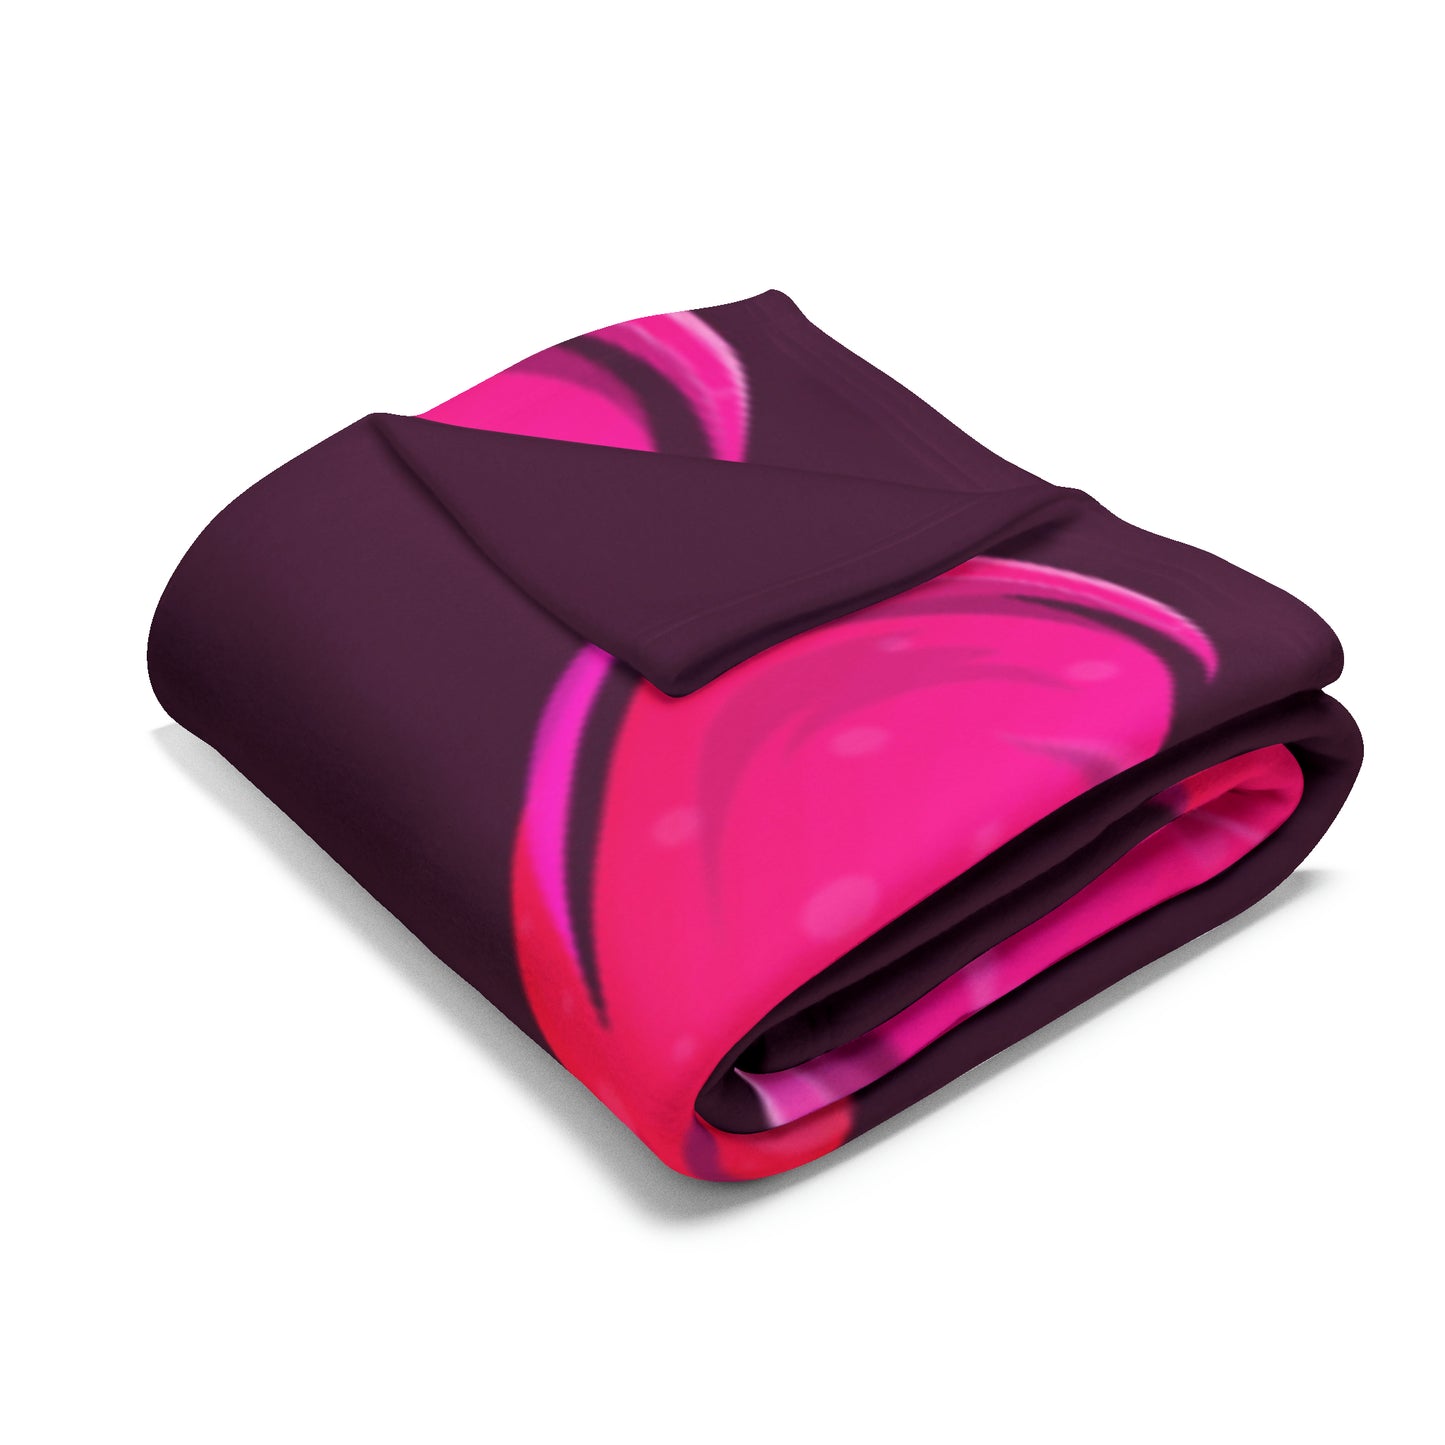 Arctic Pink and Black Heart Fleece Blanket